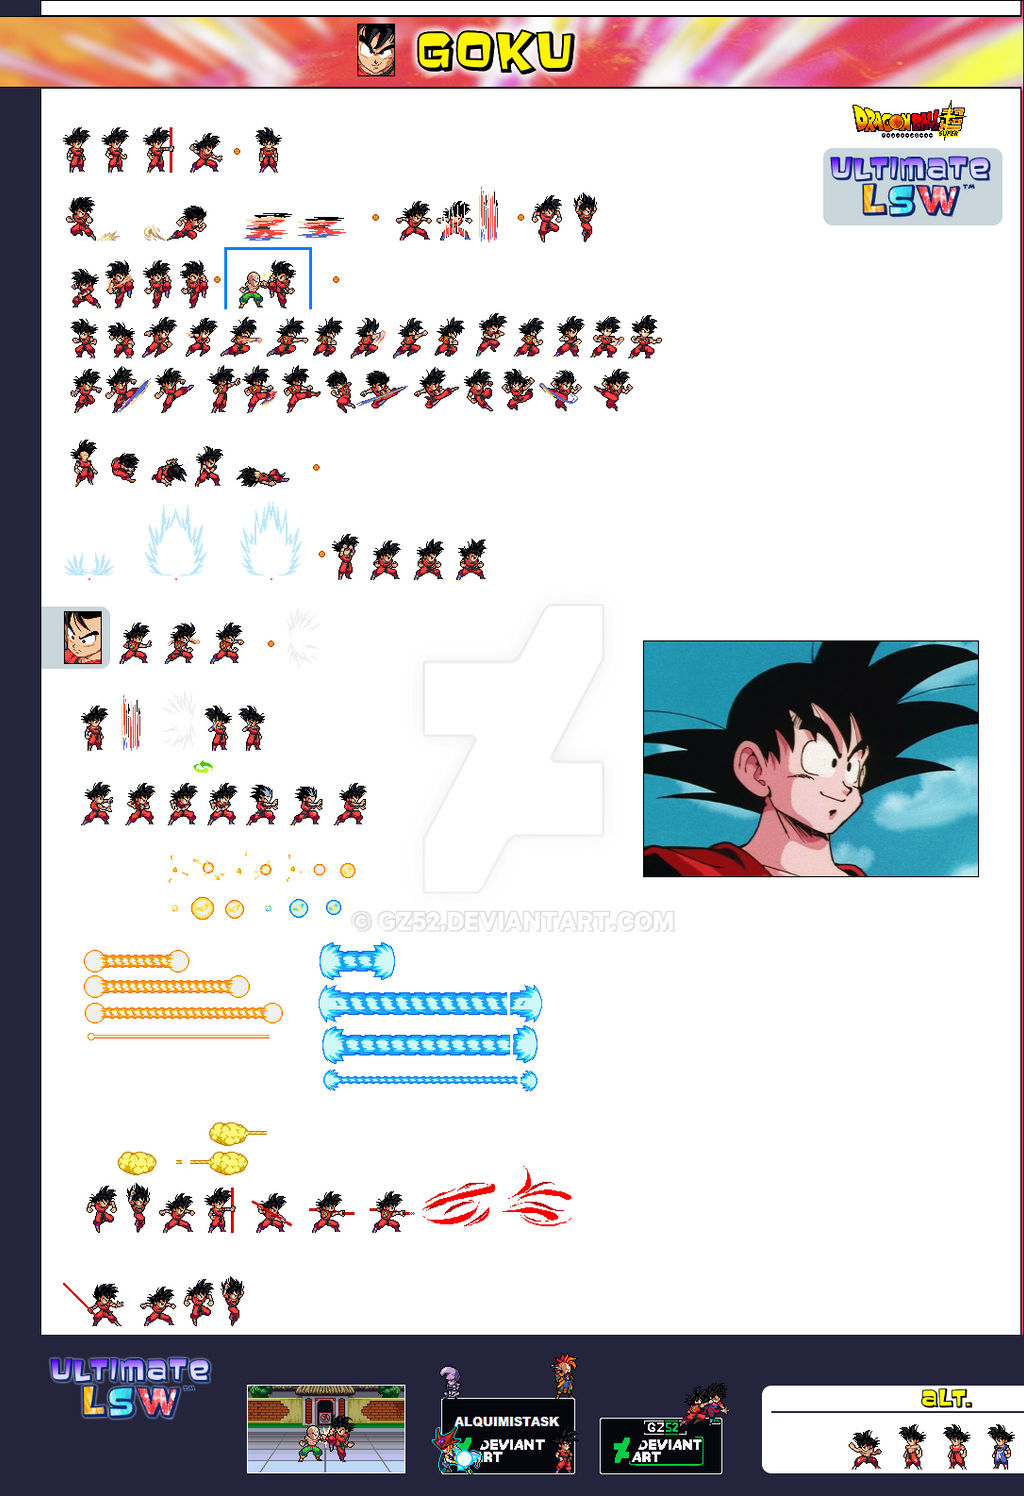 Teen Goku - Ultimate LSW Sheet by GZ52 on DeviantArt